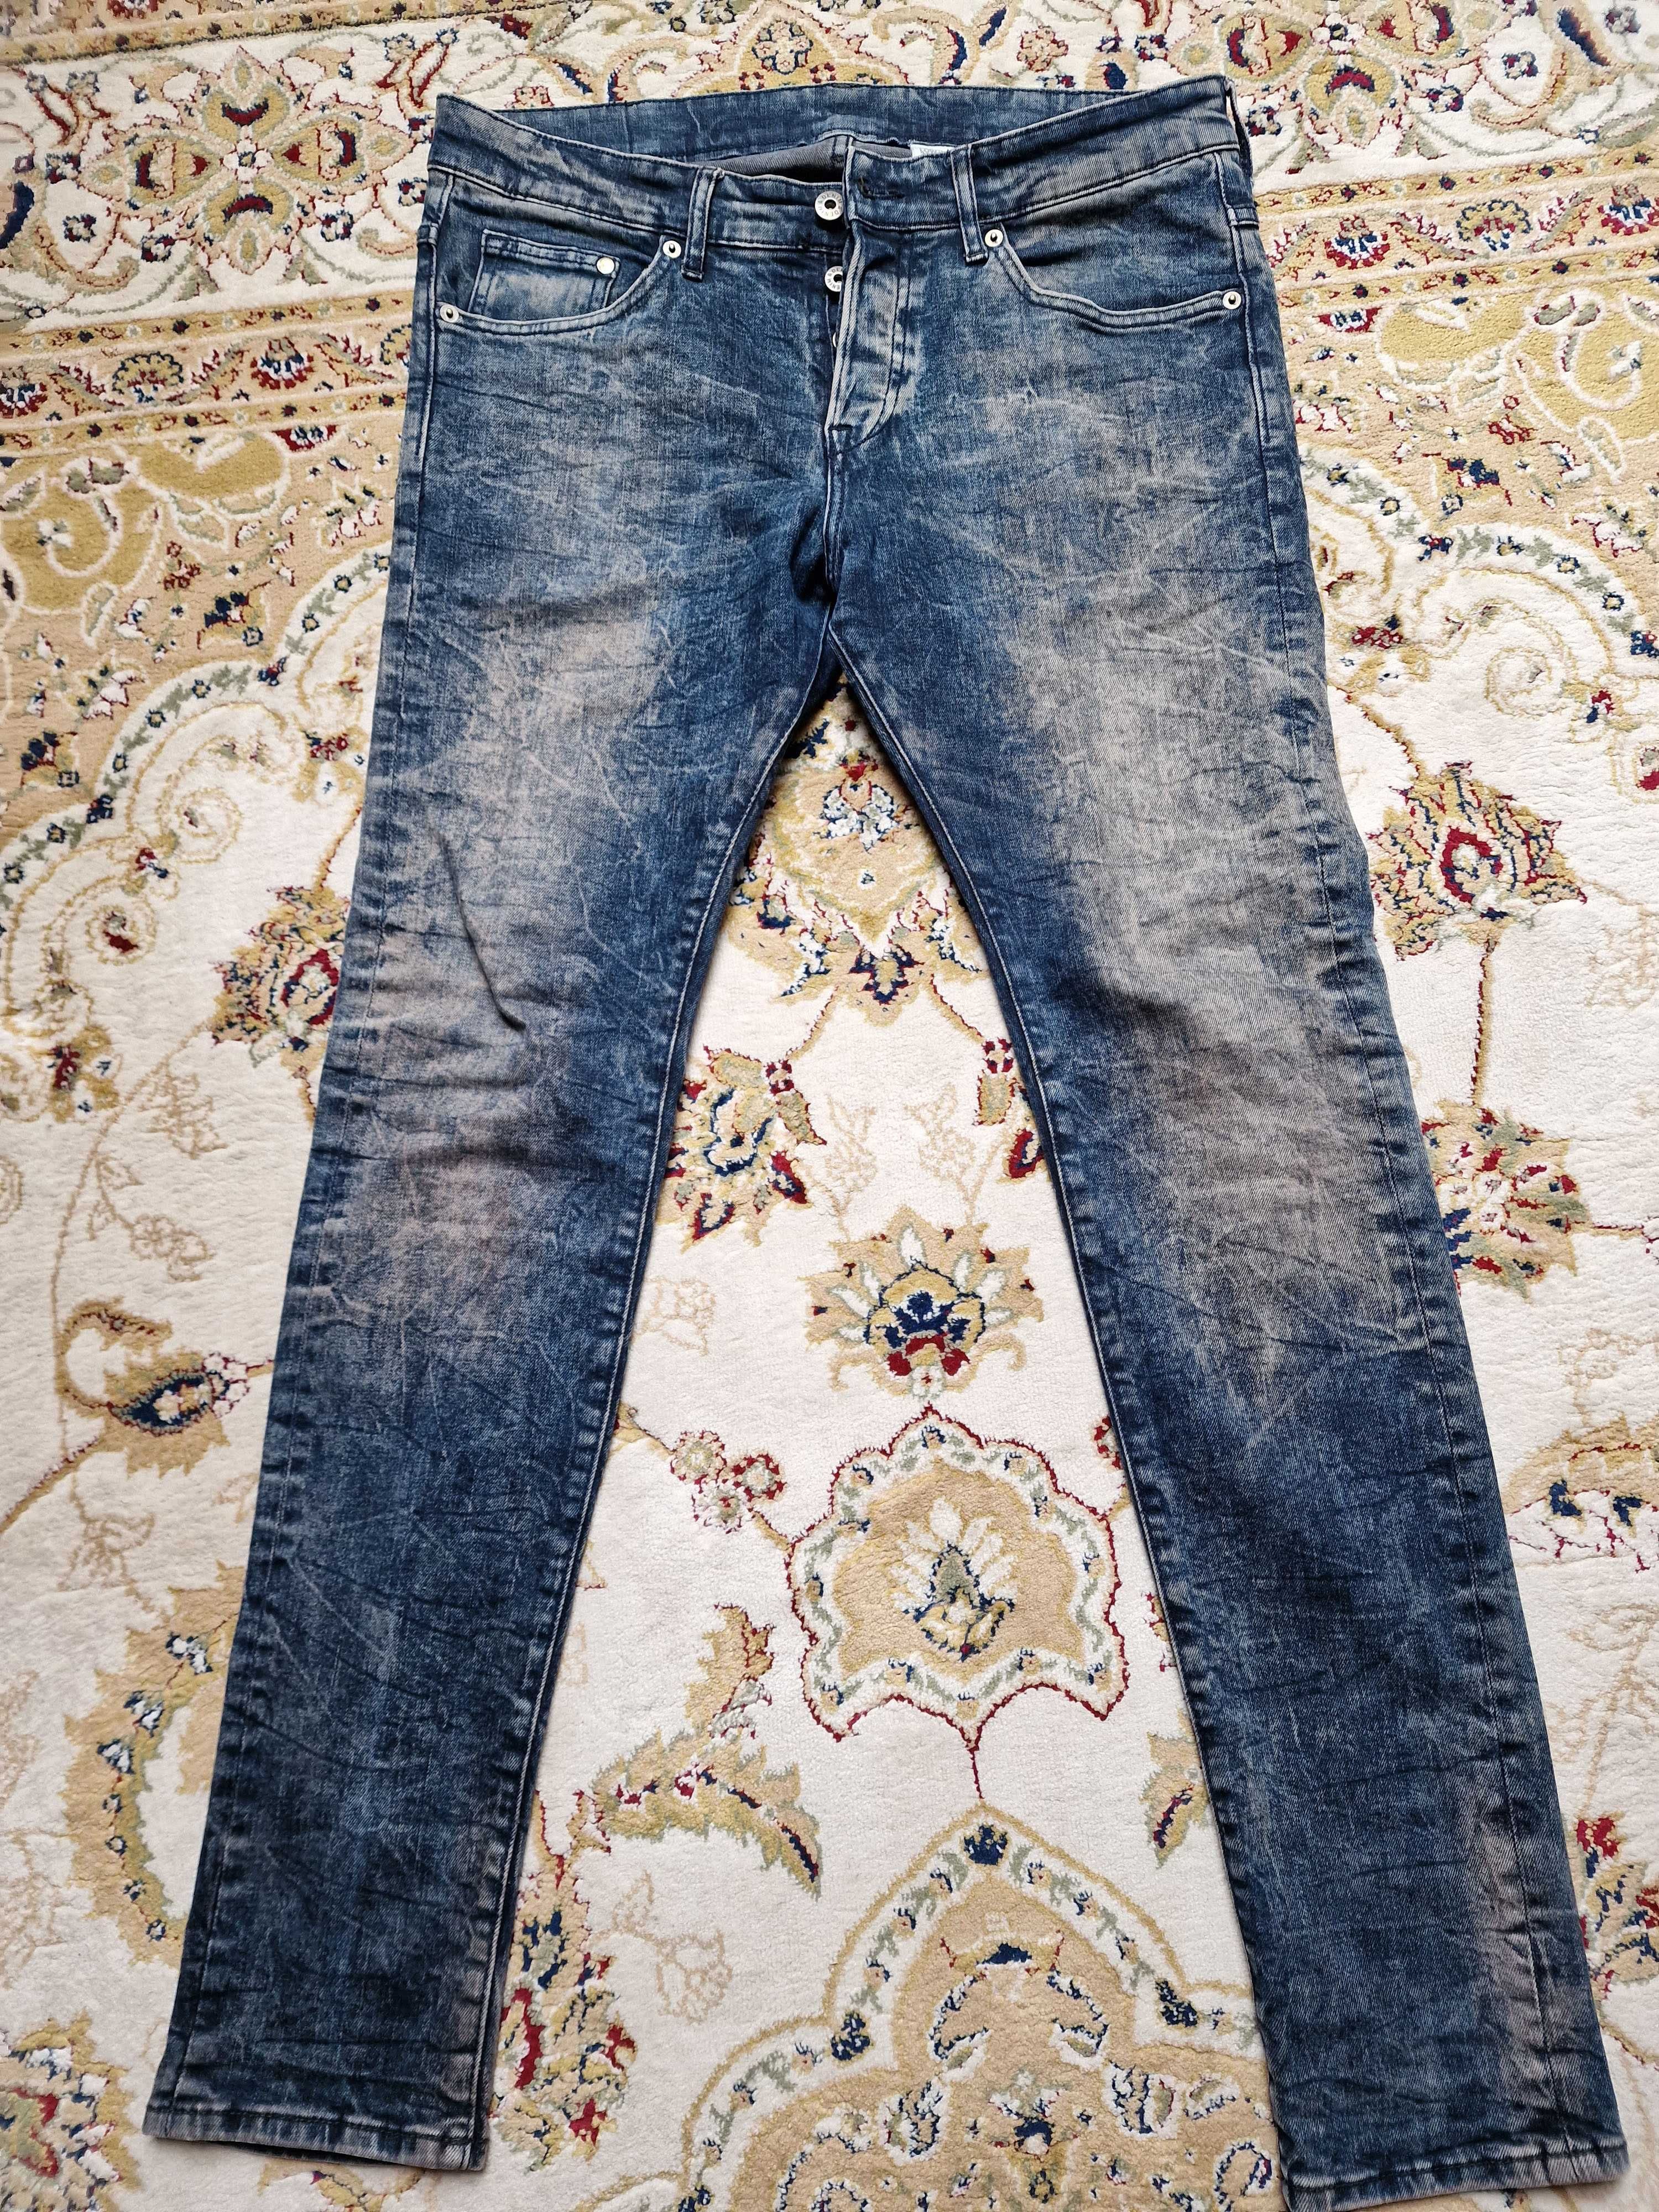 Spodnie jeansowe H&M skinny 32/32 stan bdb jedyne 40zł ciekawe polecam